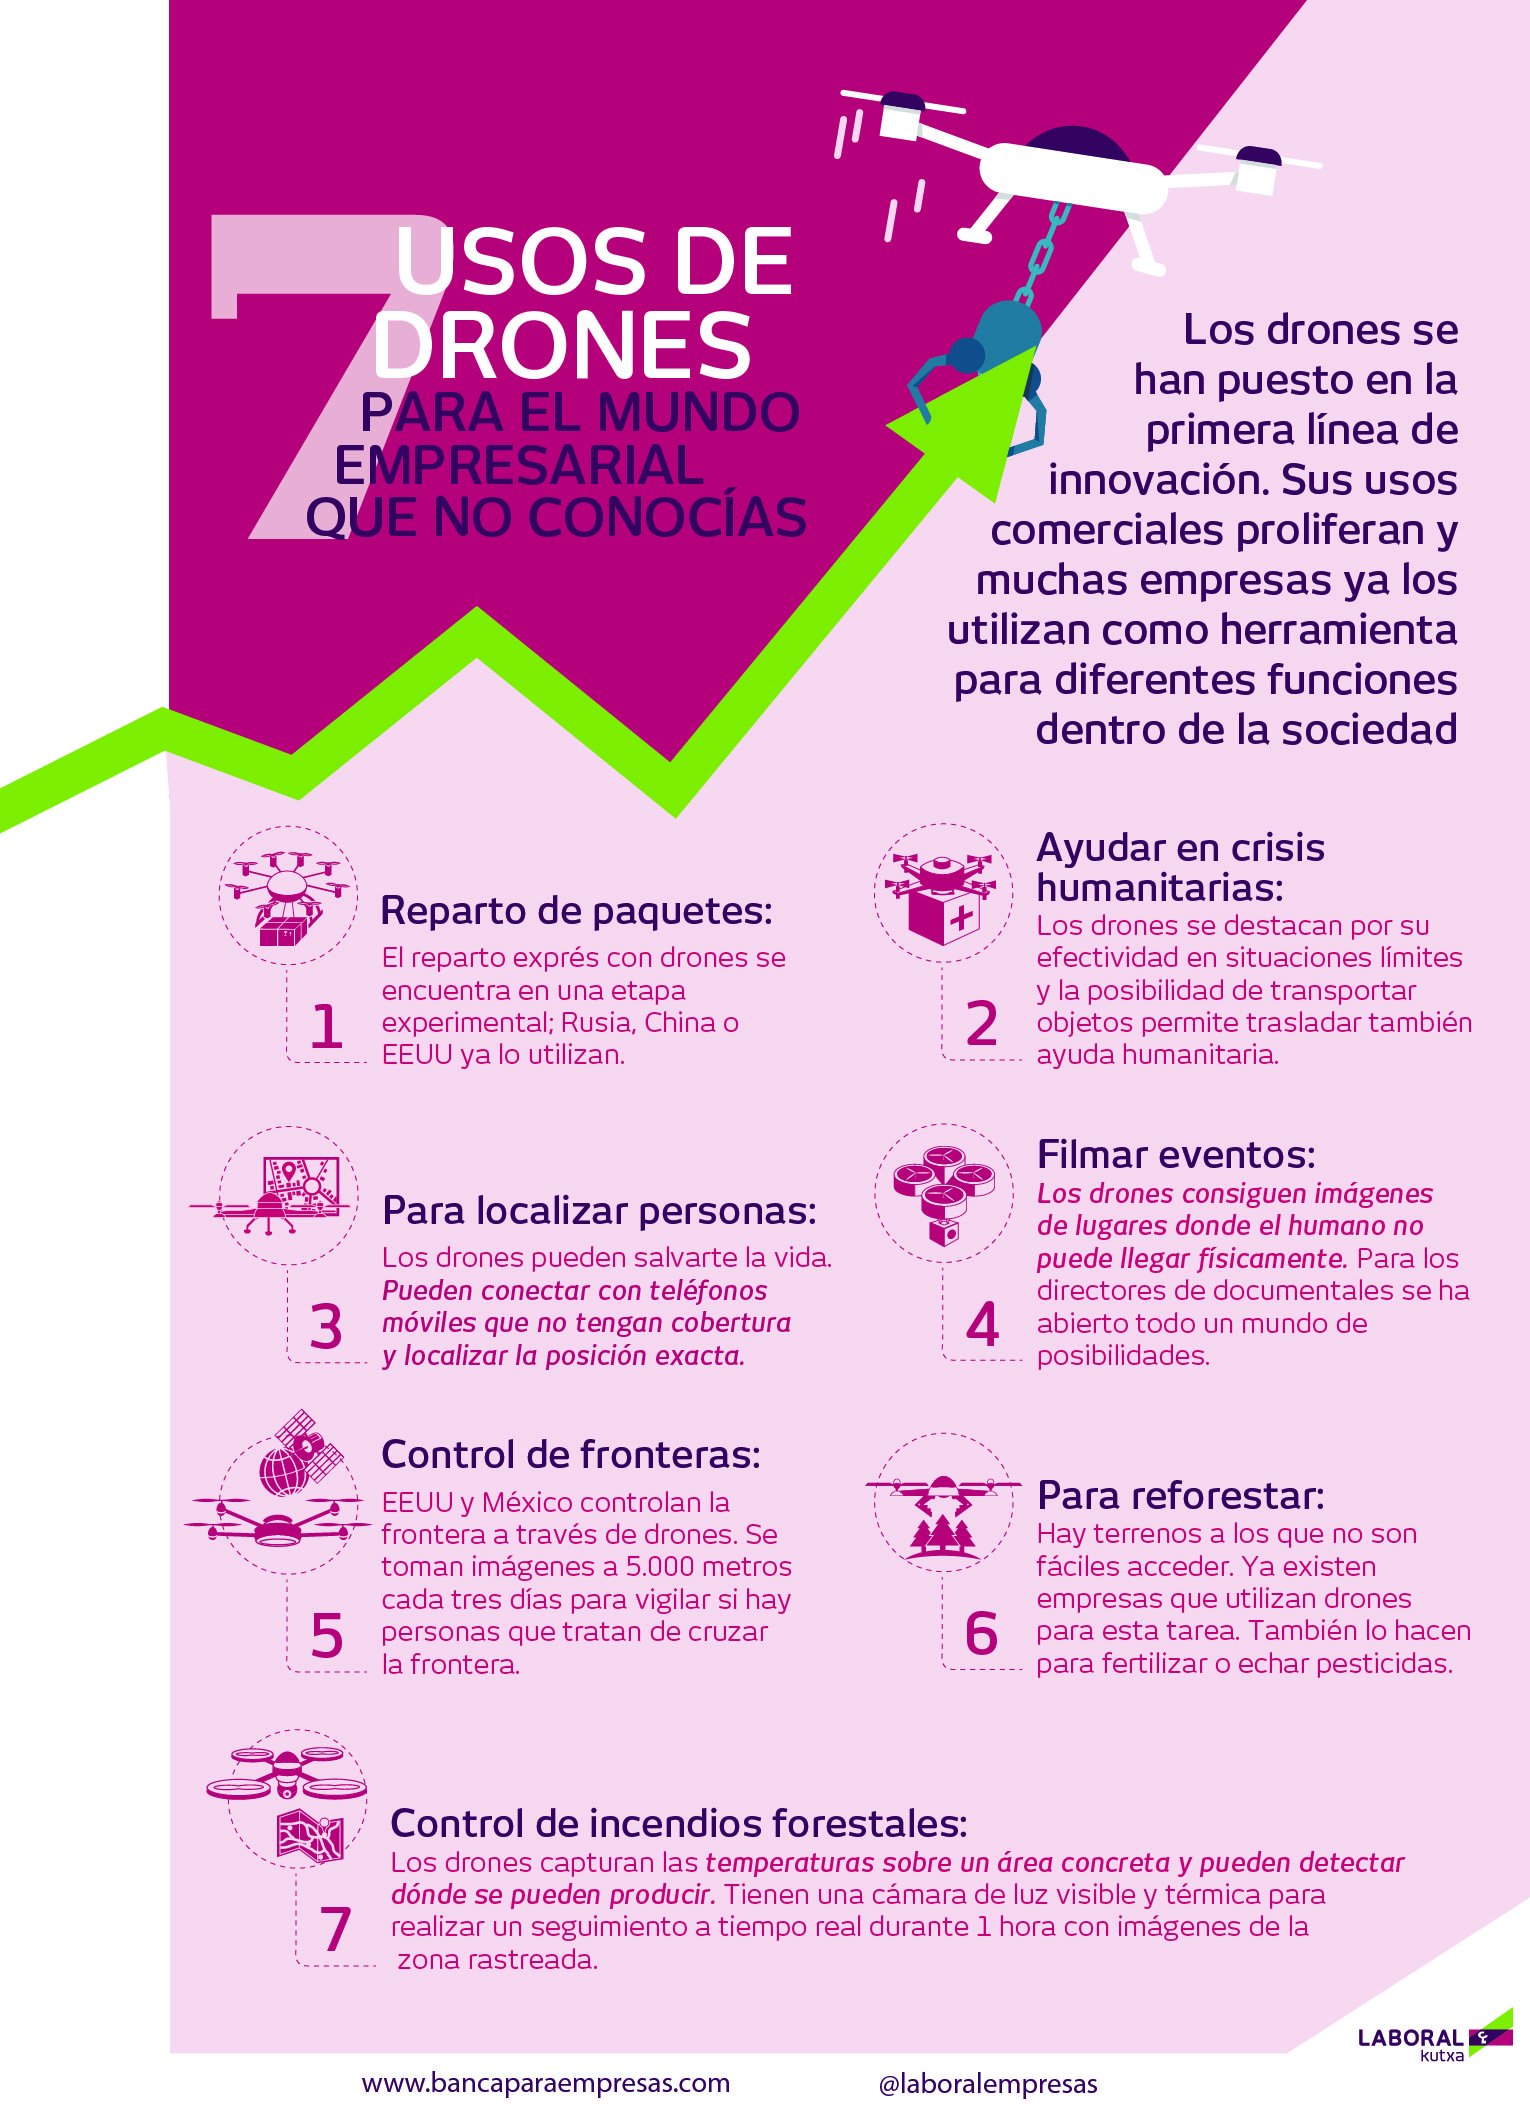 7 usos de drones para el mundo empresarial